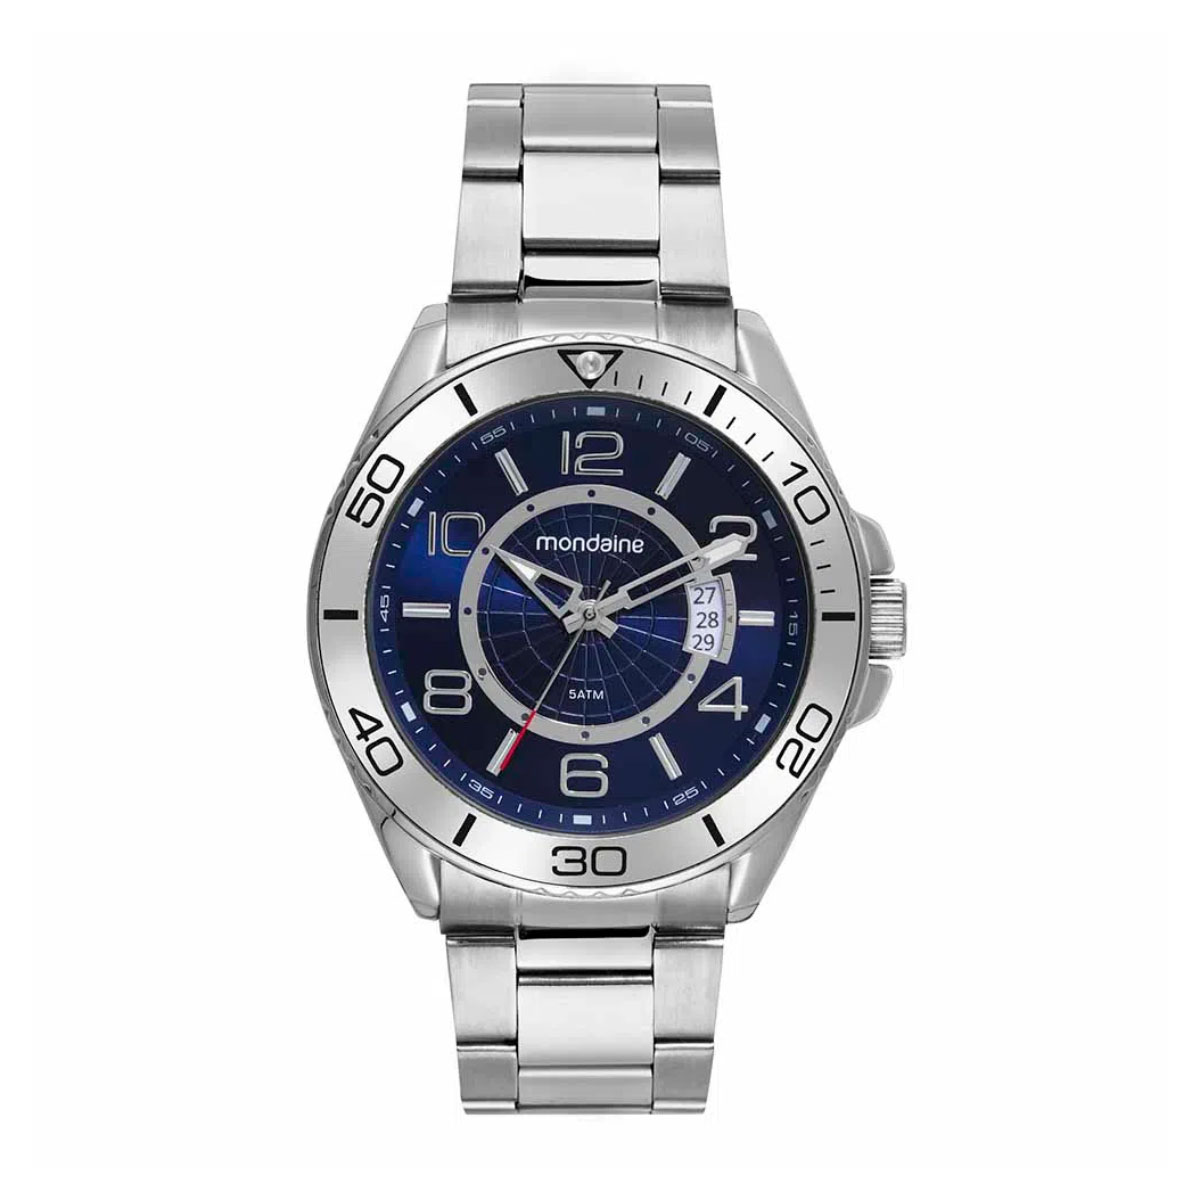 Relógio Masculino Mondaine Casual Prata - Detalhe Azul - 32542G0MVNE1